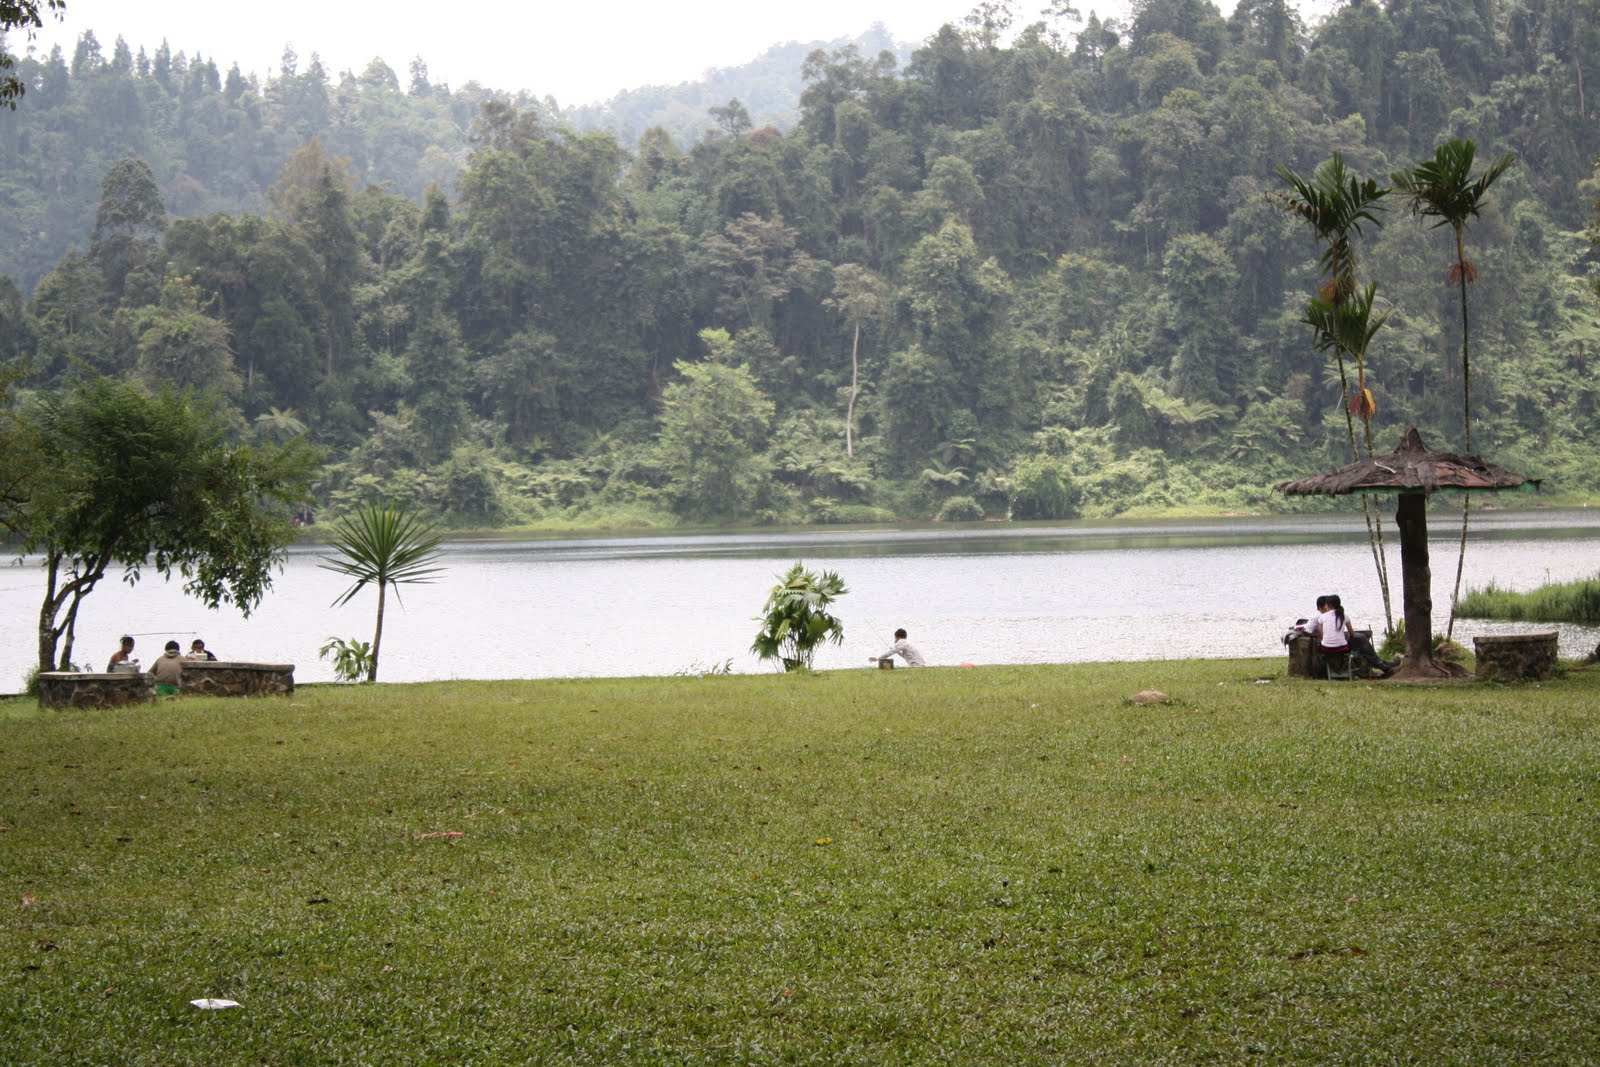 Pemkot Bandung Akan Bangun Danau Buatan di Daerah Setiabudi